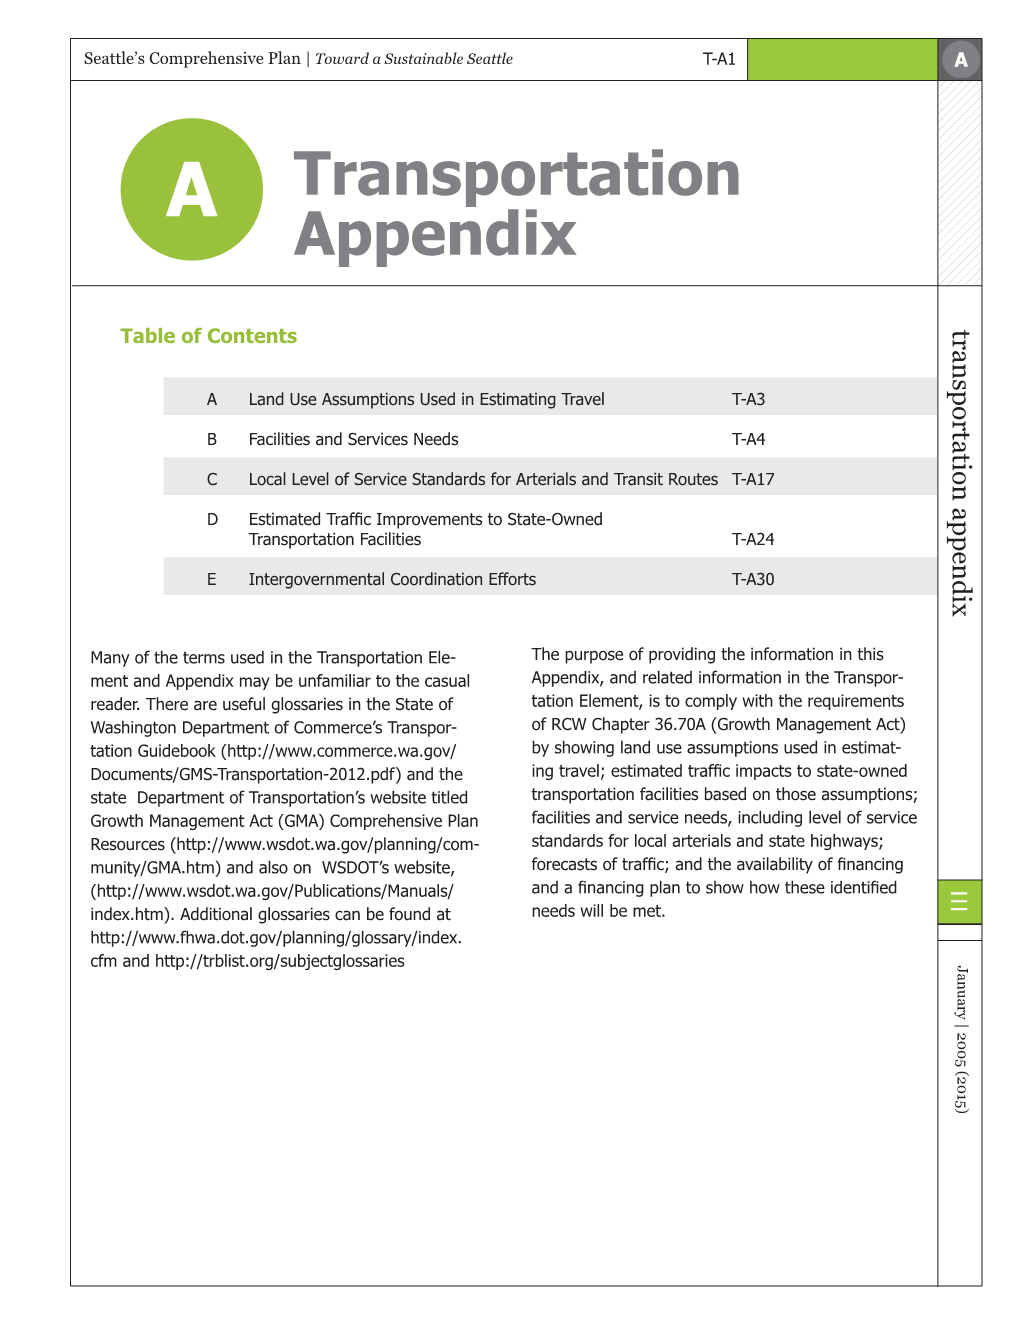 Seattle's Comprehensive Plan Transportation Appendix